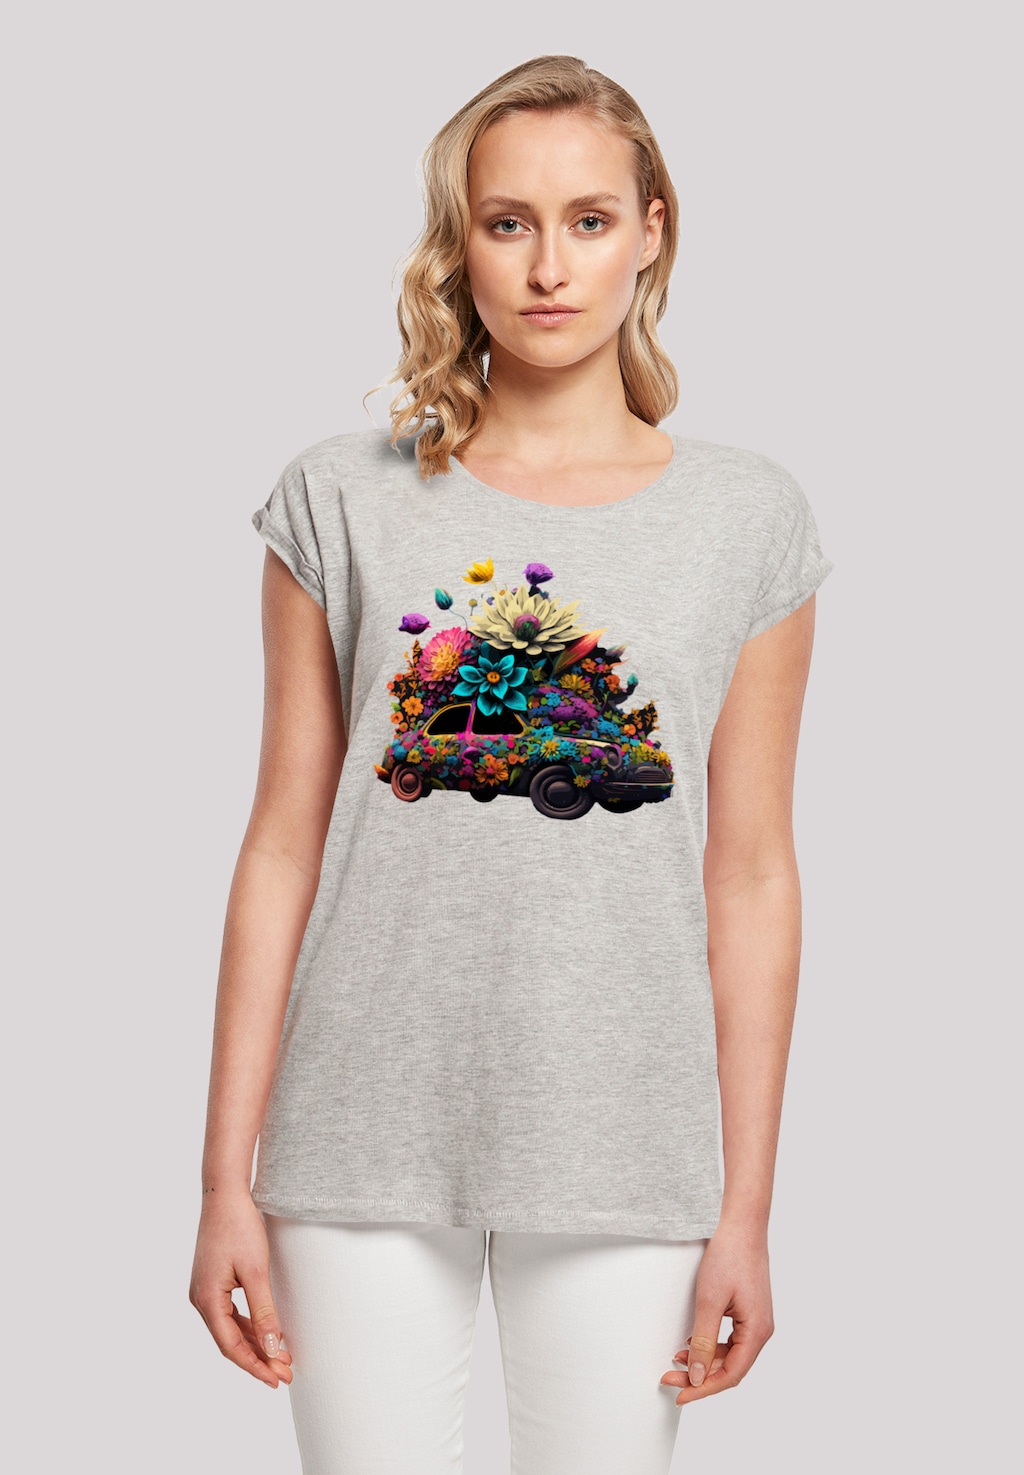 F4NT4STIC T-Shirt "Blumen Auto Tee", Print günstig online kaufen